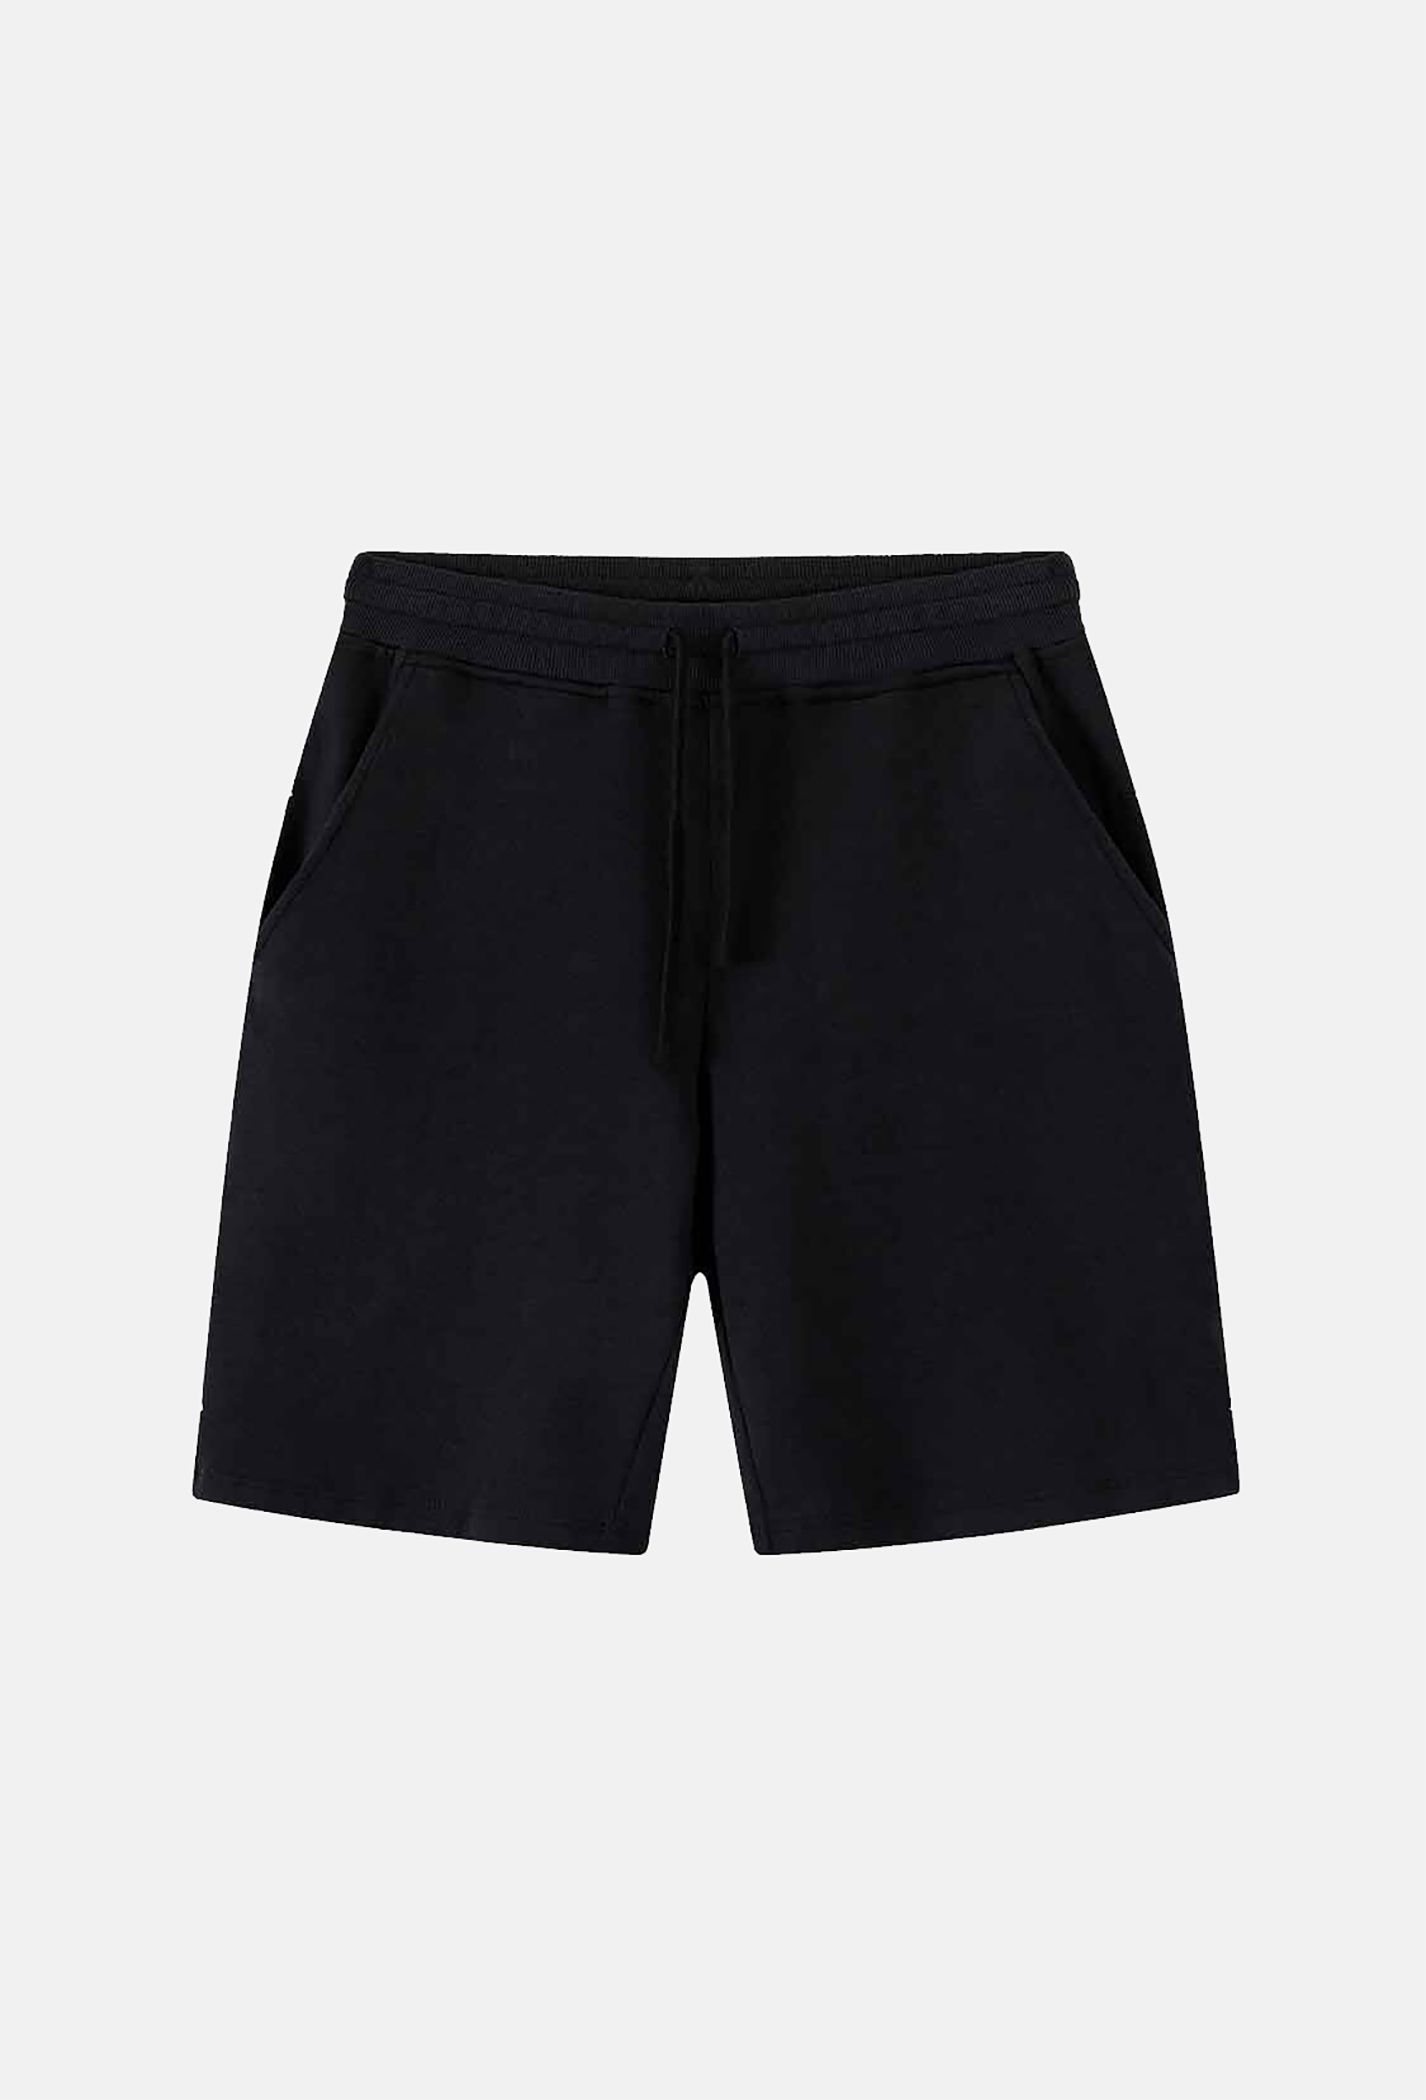 DEAL - Quần Shorts nam Easy Active (Form nhỏ tăng 1 size) gửi từ HN Đen 4